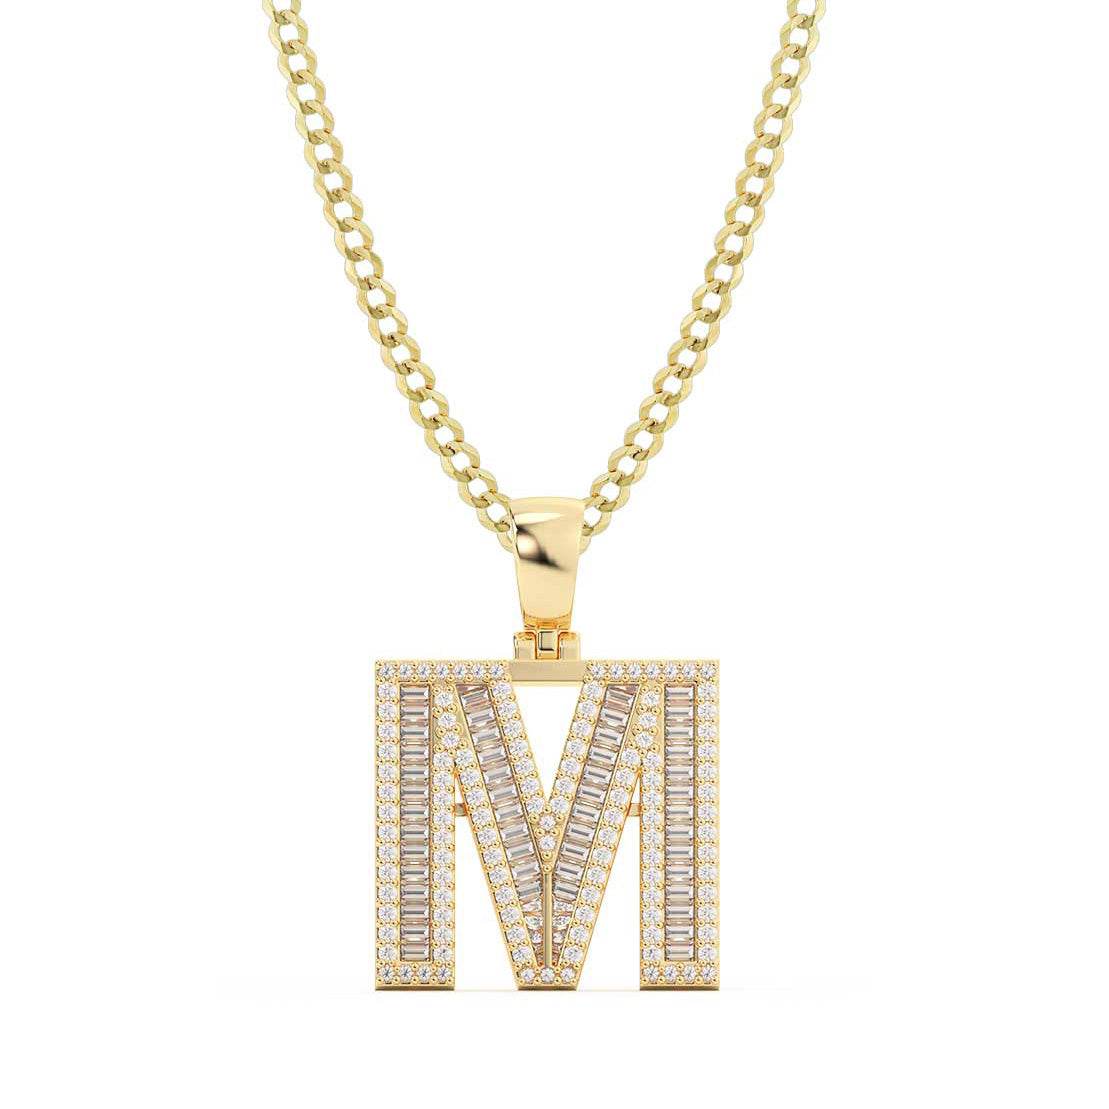 Women's Baguette & Round Cut Diamond "M" Initial Pendant Necklace 0.84ct 14K Gold